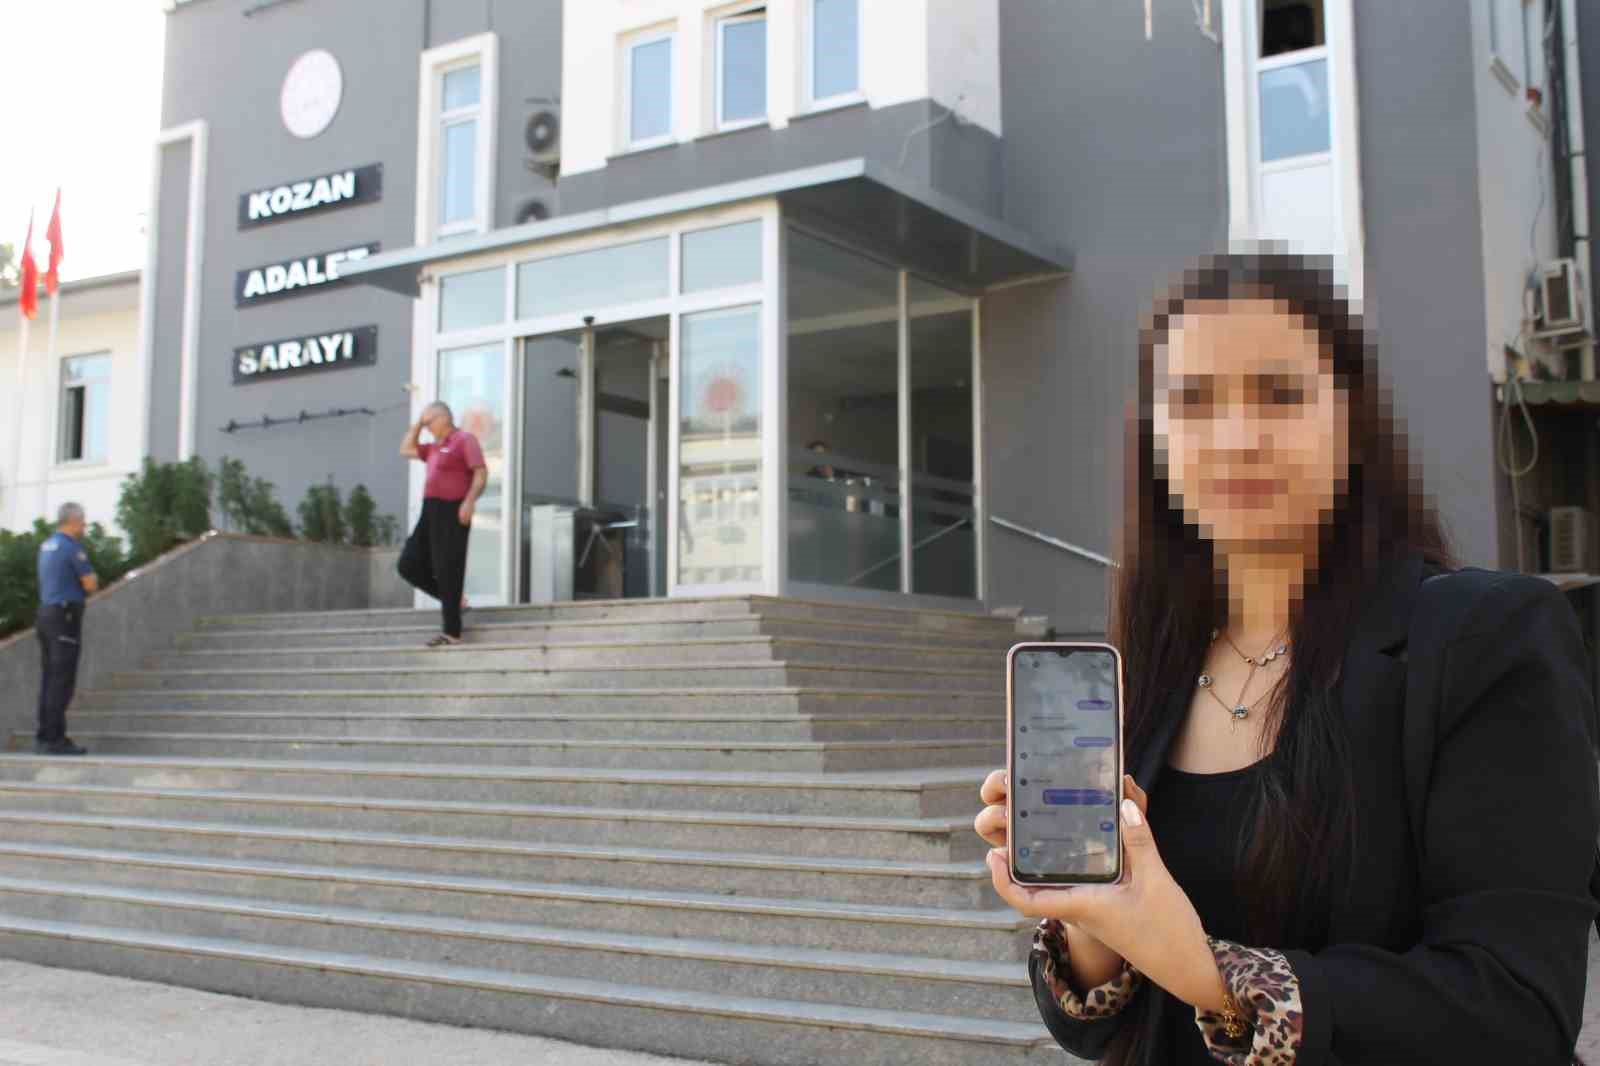 Adana'da okul müdüründen depremzede kadını mesajla taciz iddiası